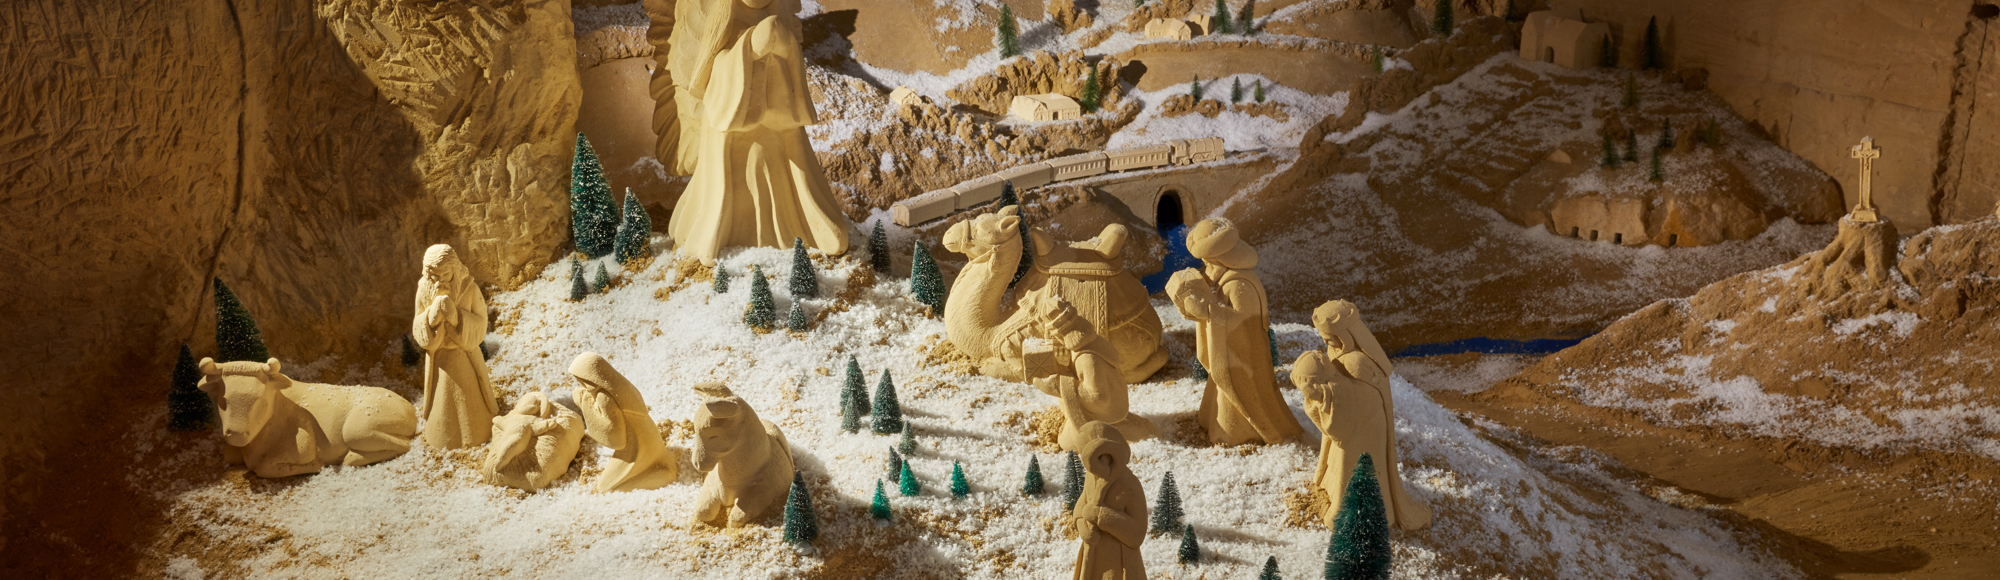 Een besneeuwd mergellandschap met een kerststalletje van mergelsculpturen